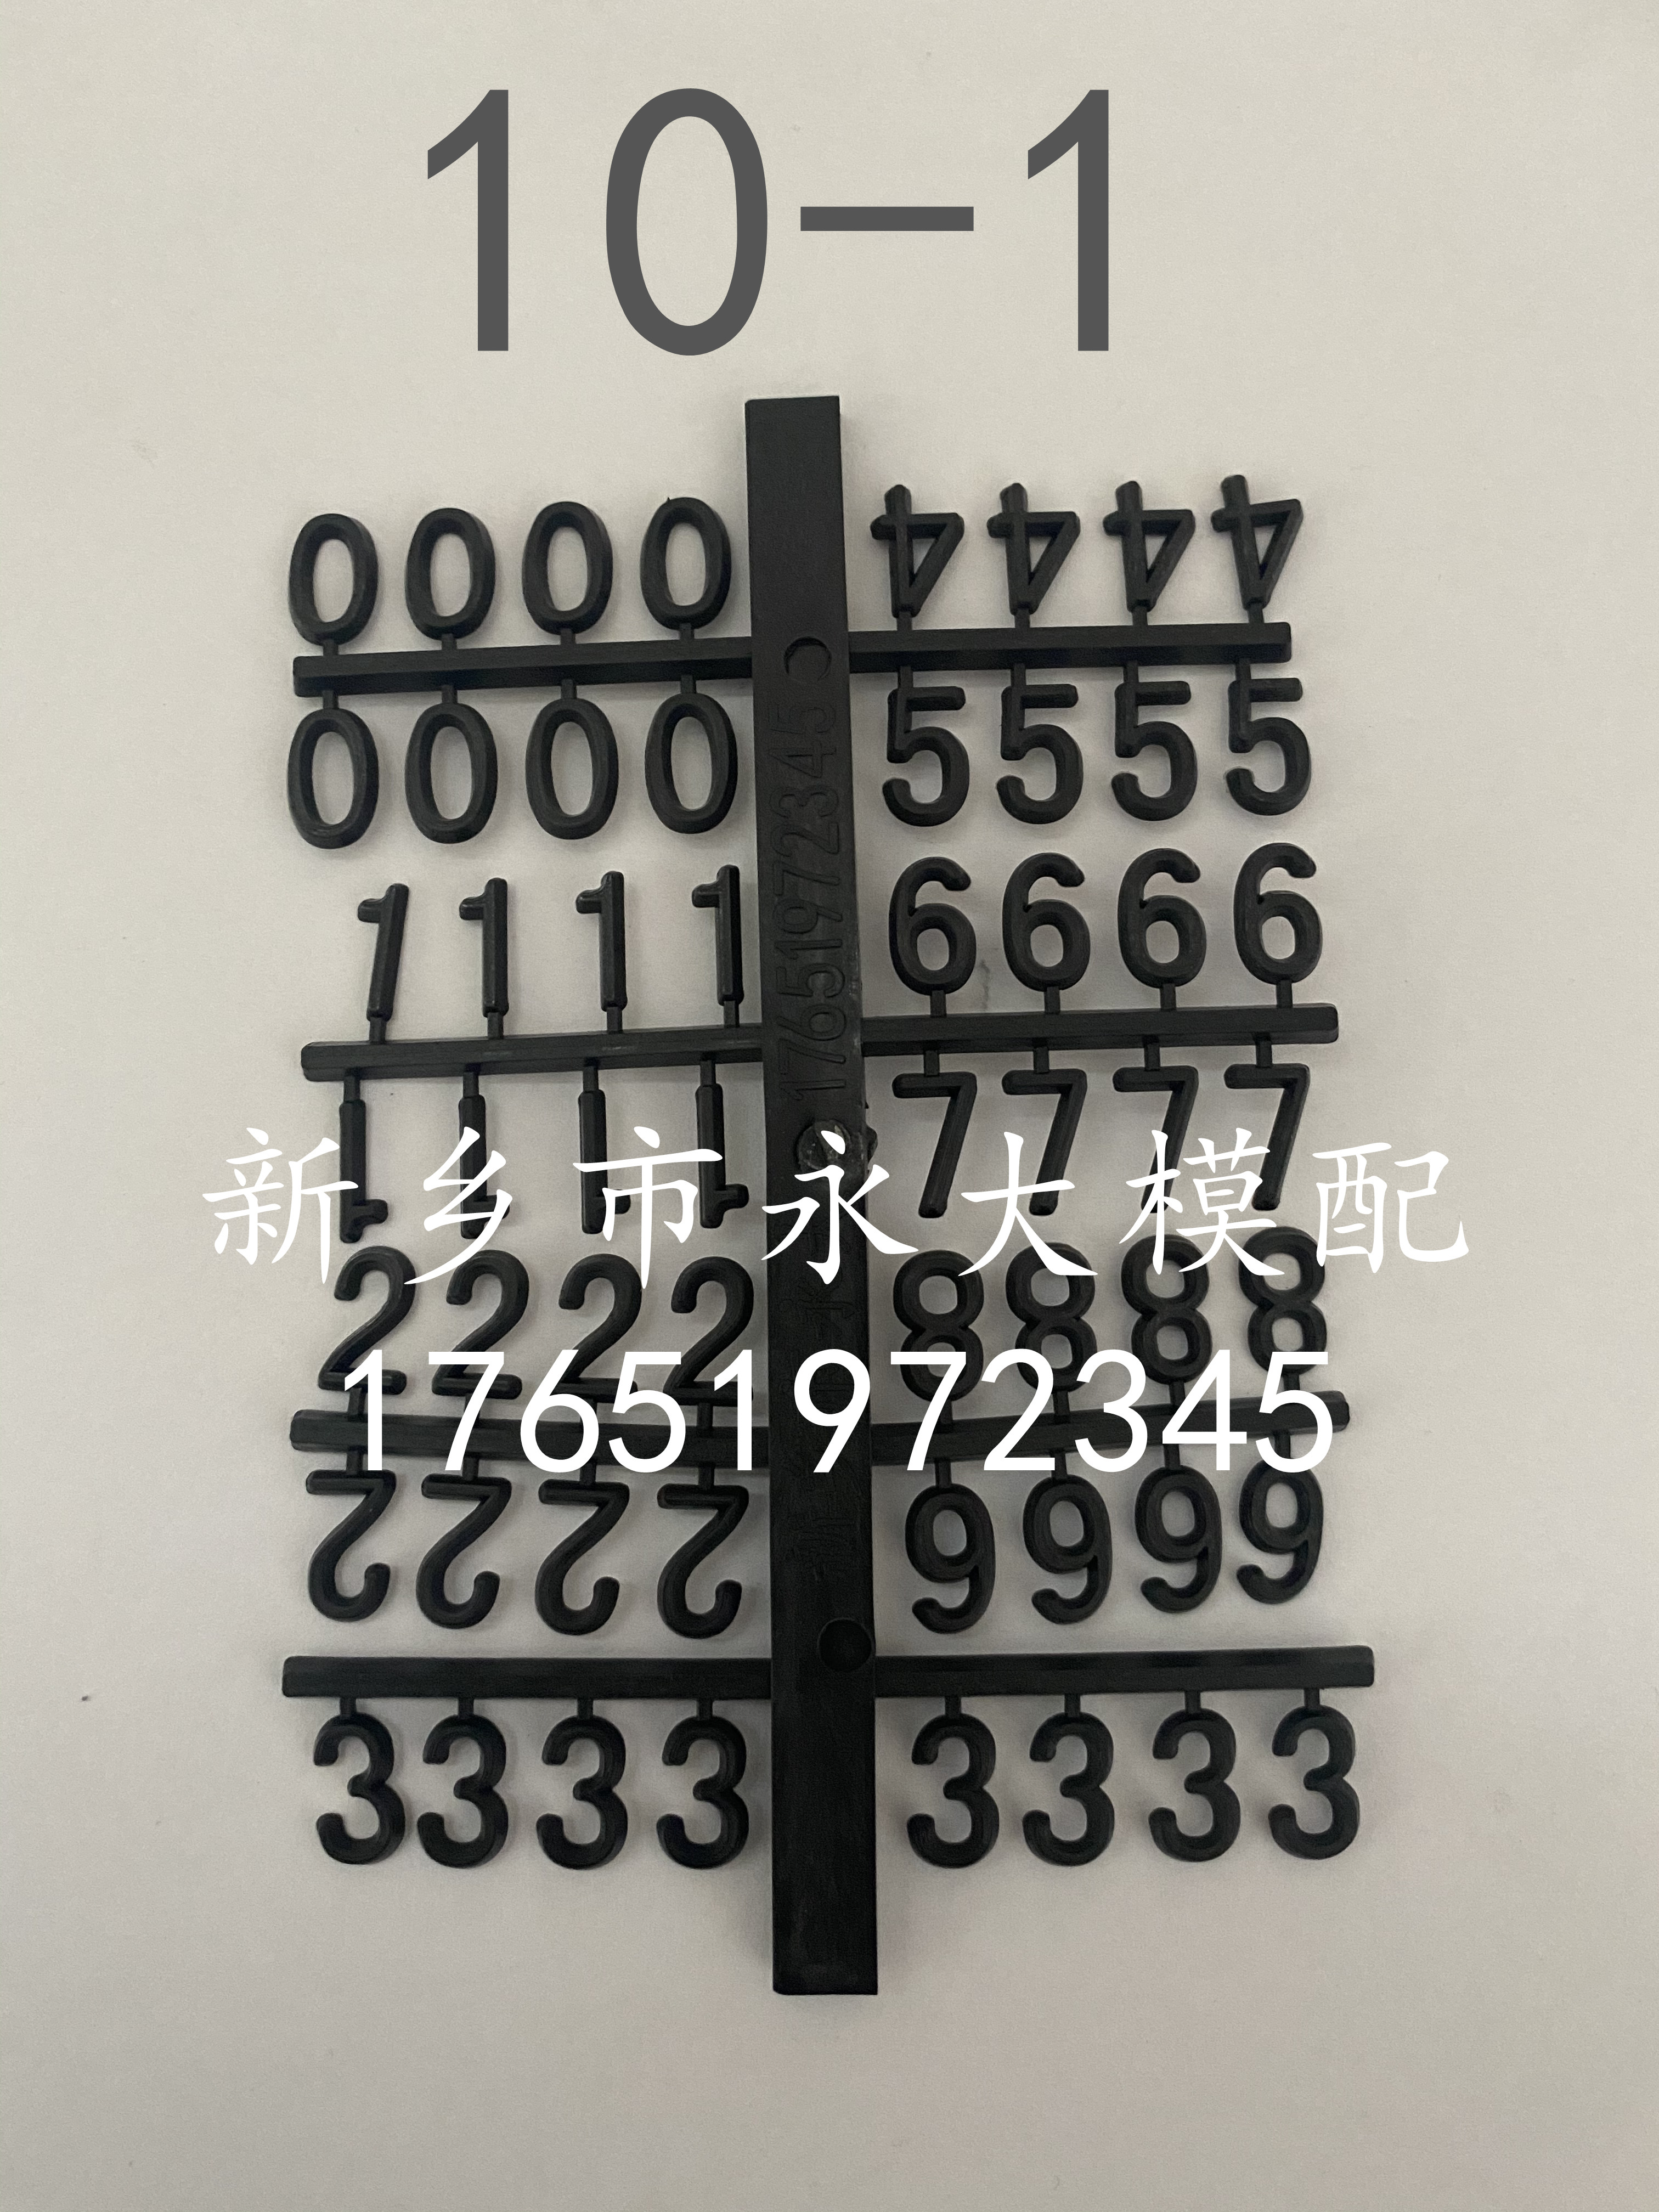 10-1木模铸造模具用塑料数字字母 塑料数字定位盘定制标识